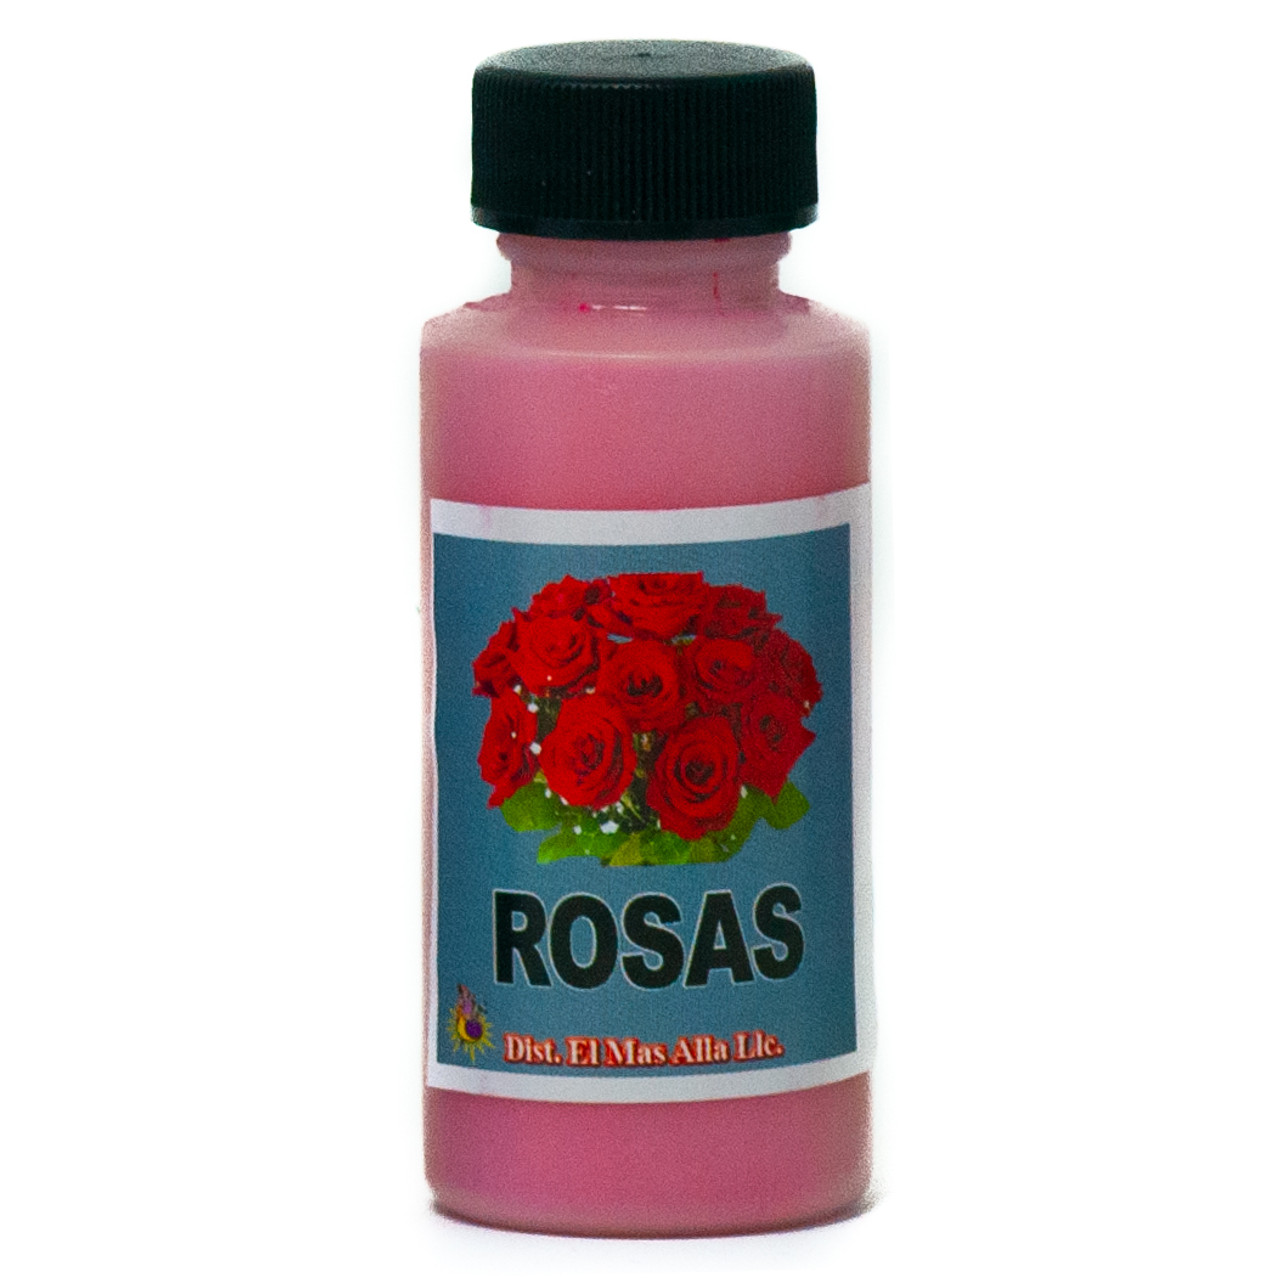 Polvo Rosas - Roses  Powder For Spells -